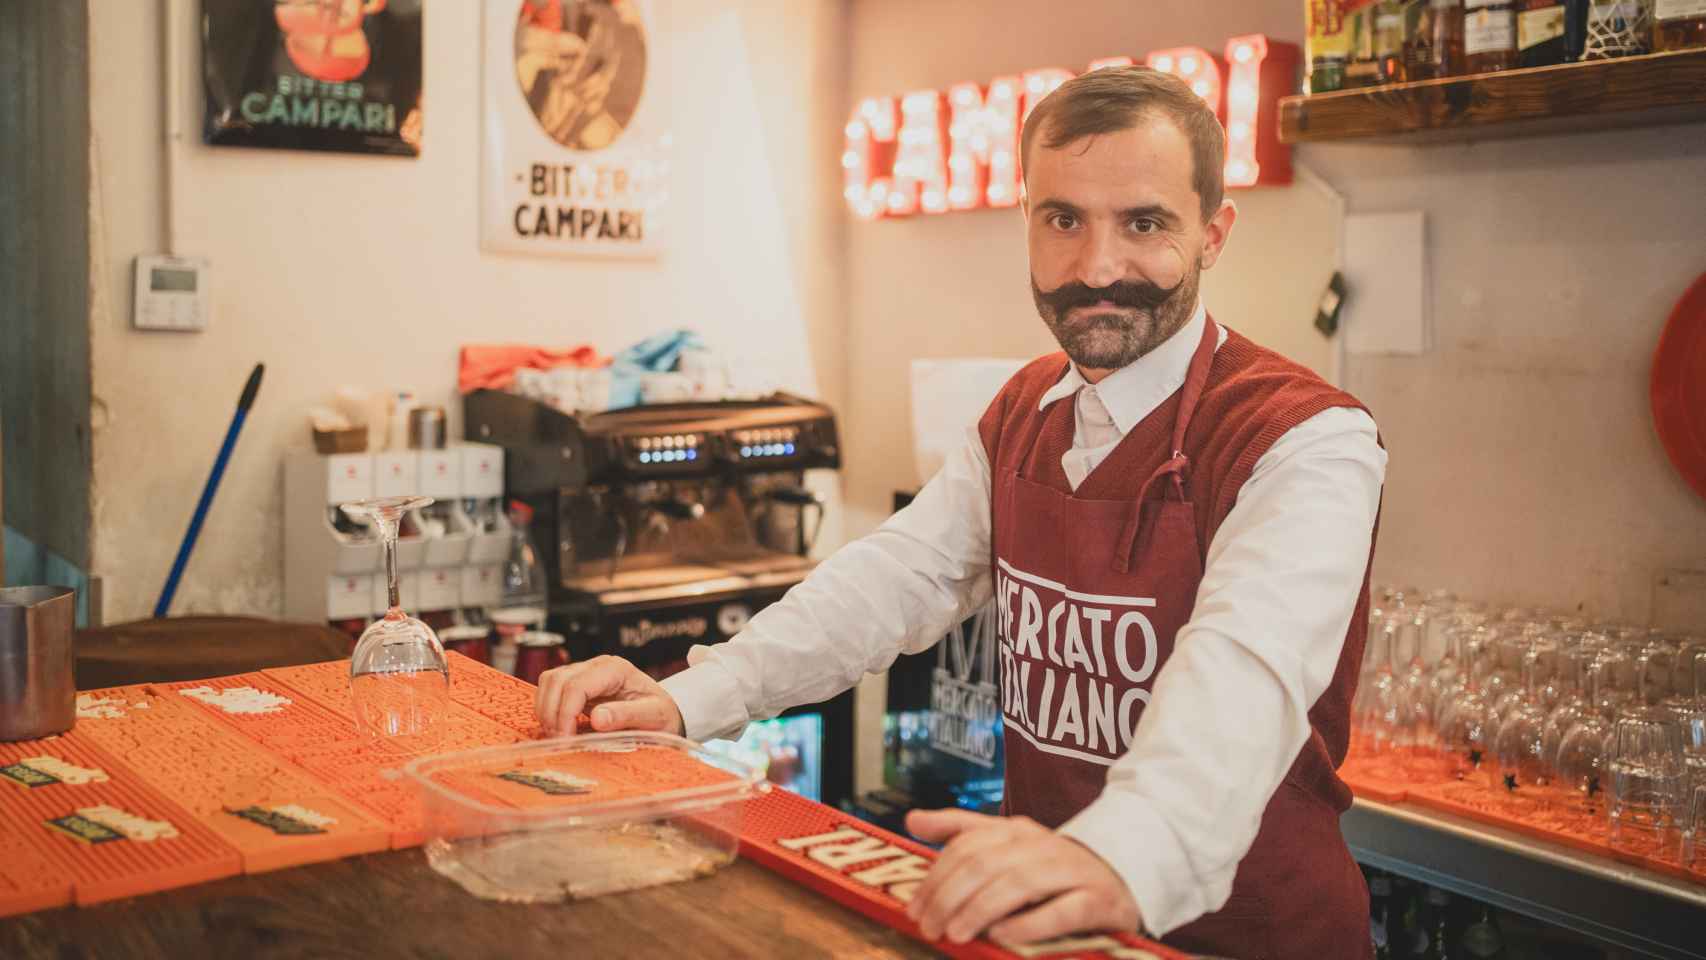 El camarero Salvatore Gambitta en la barra del Mecato Italiano.